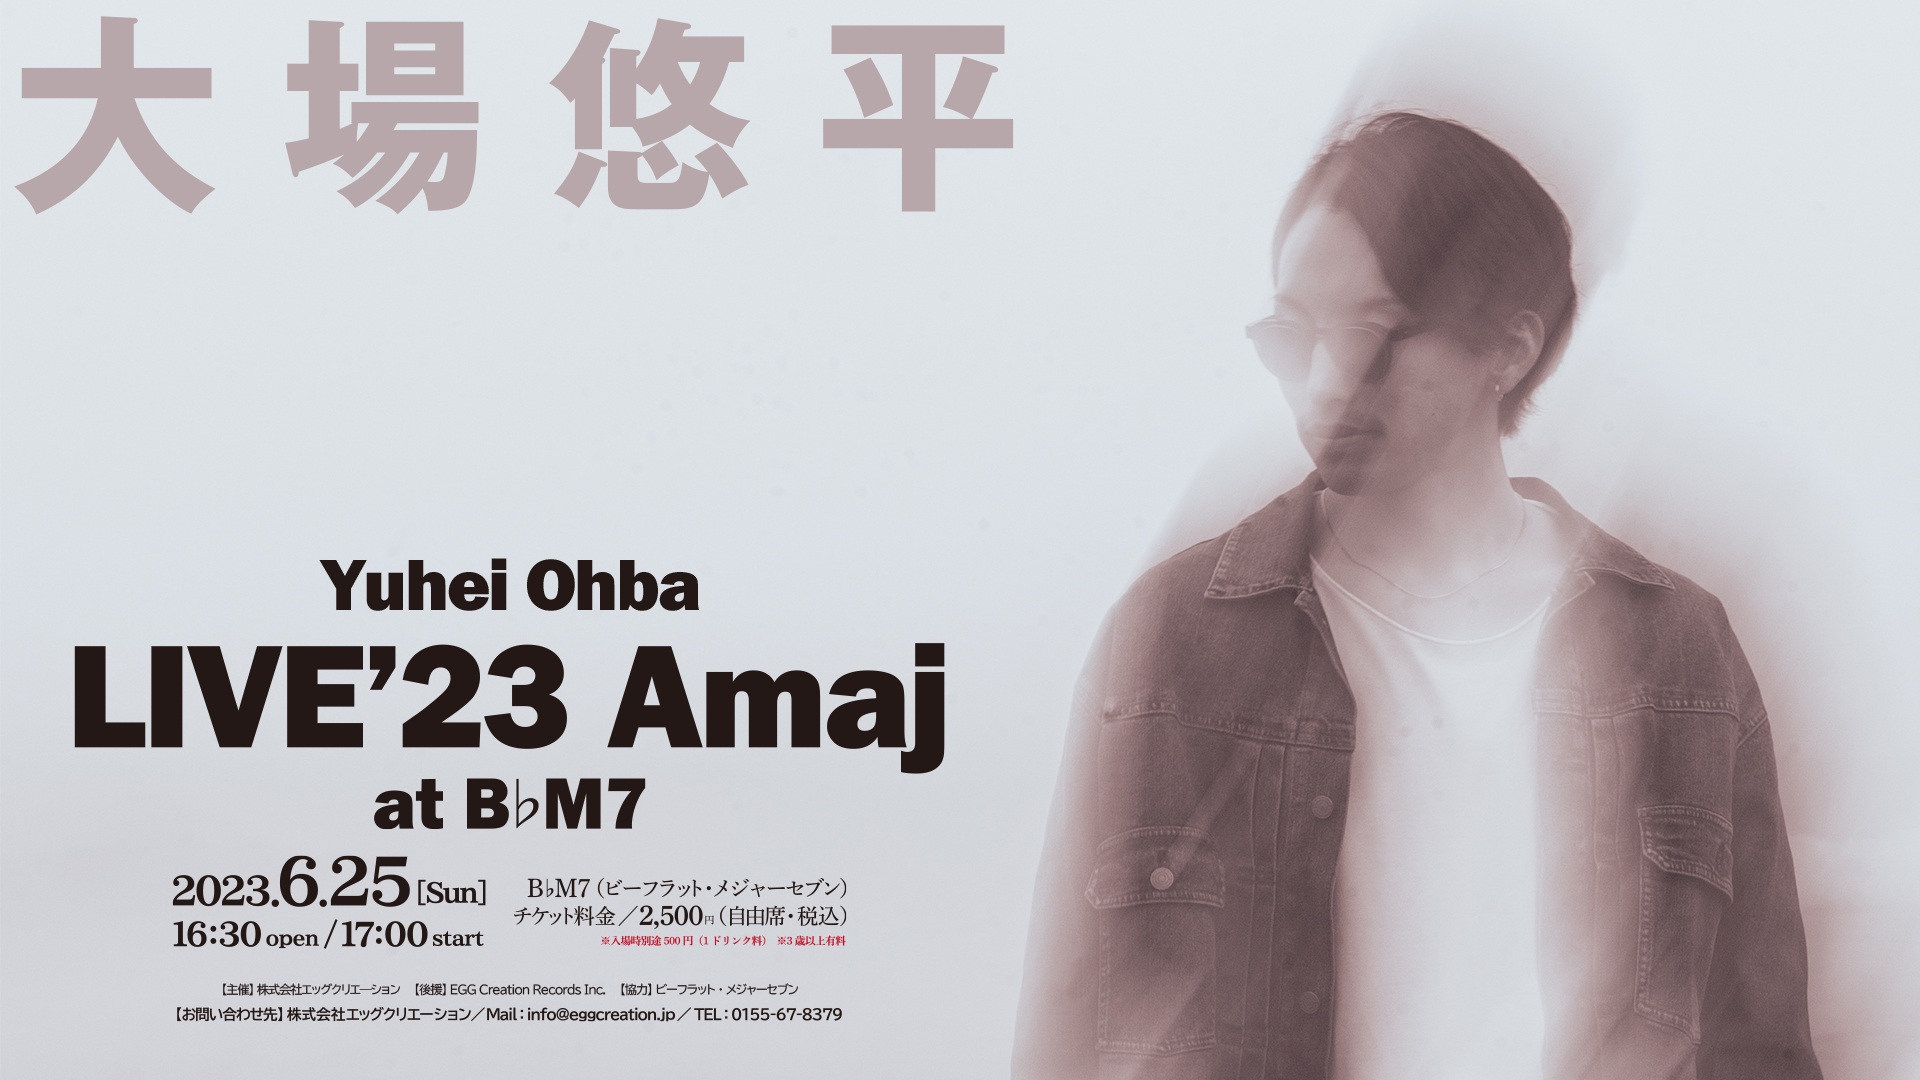 【大場悠平】 LIVE23' 『Amaj』 at B♭M7（Obhirio）開催のお知らせ